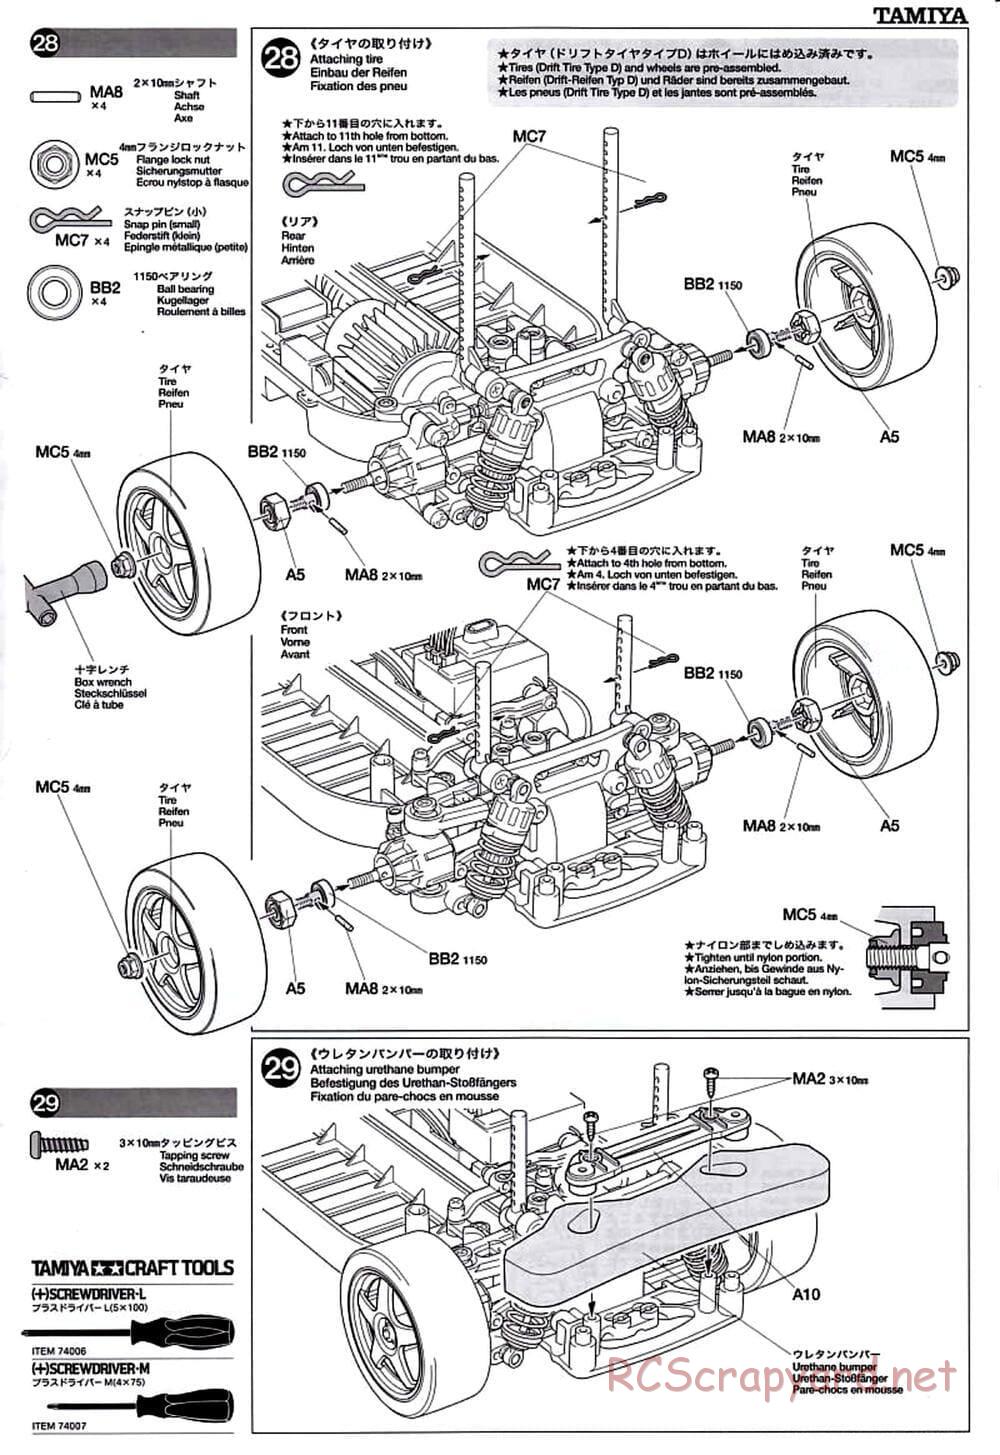 Tamiya - TT-01D Chassis - Manual - Page 15